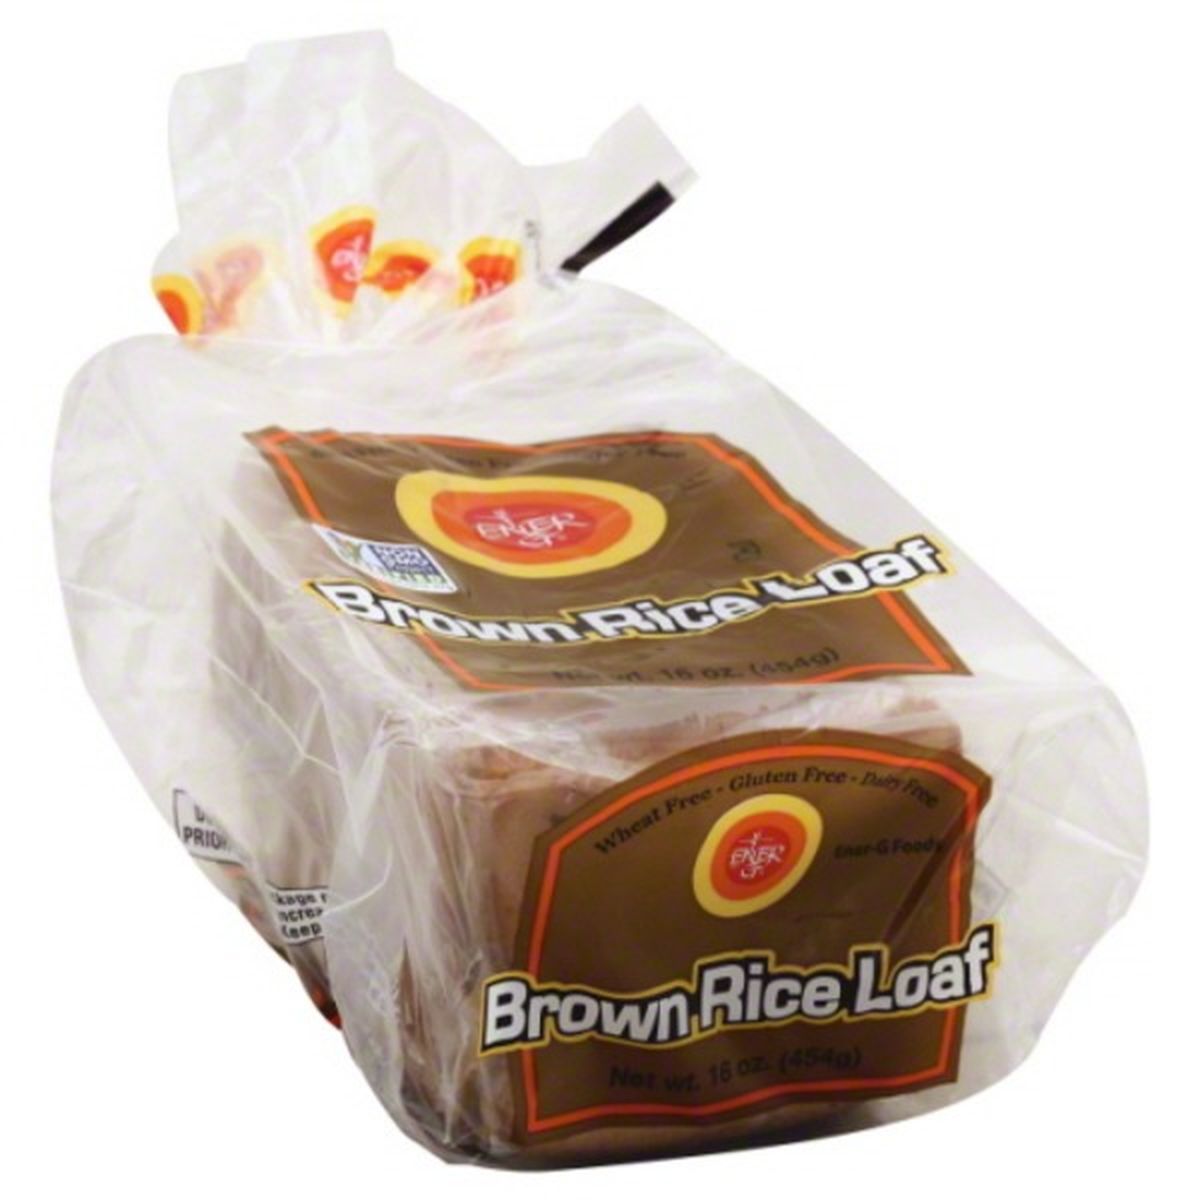 Calories in Ener-G Bread, Brown Rice Loaf